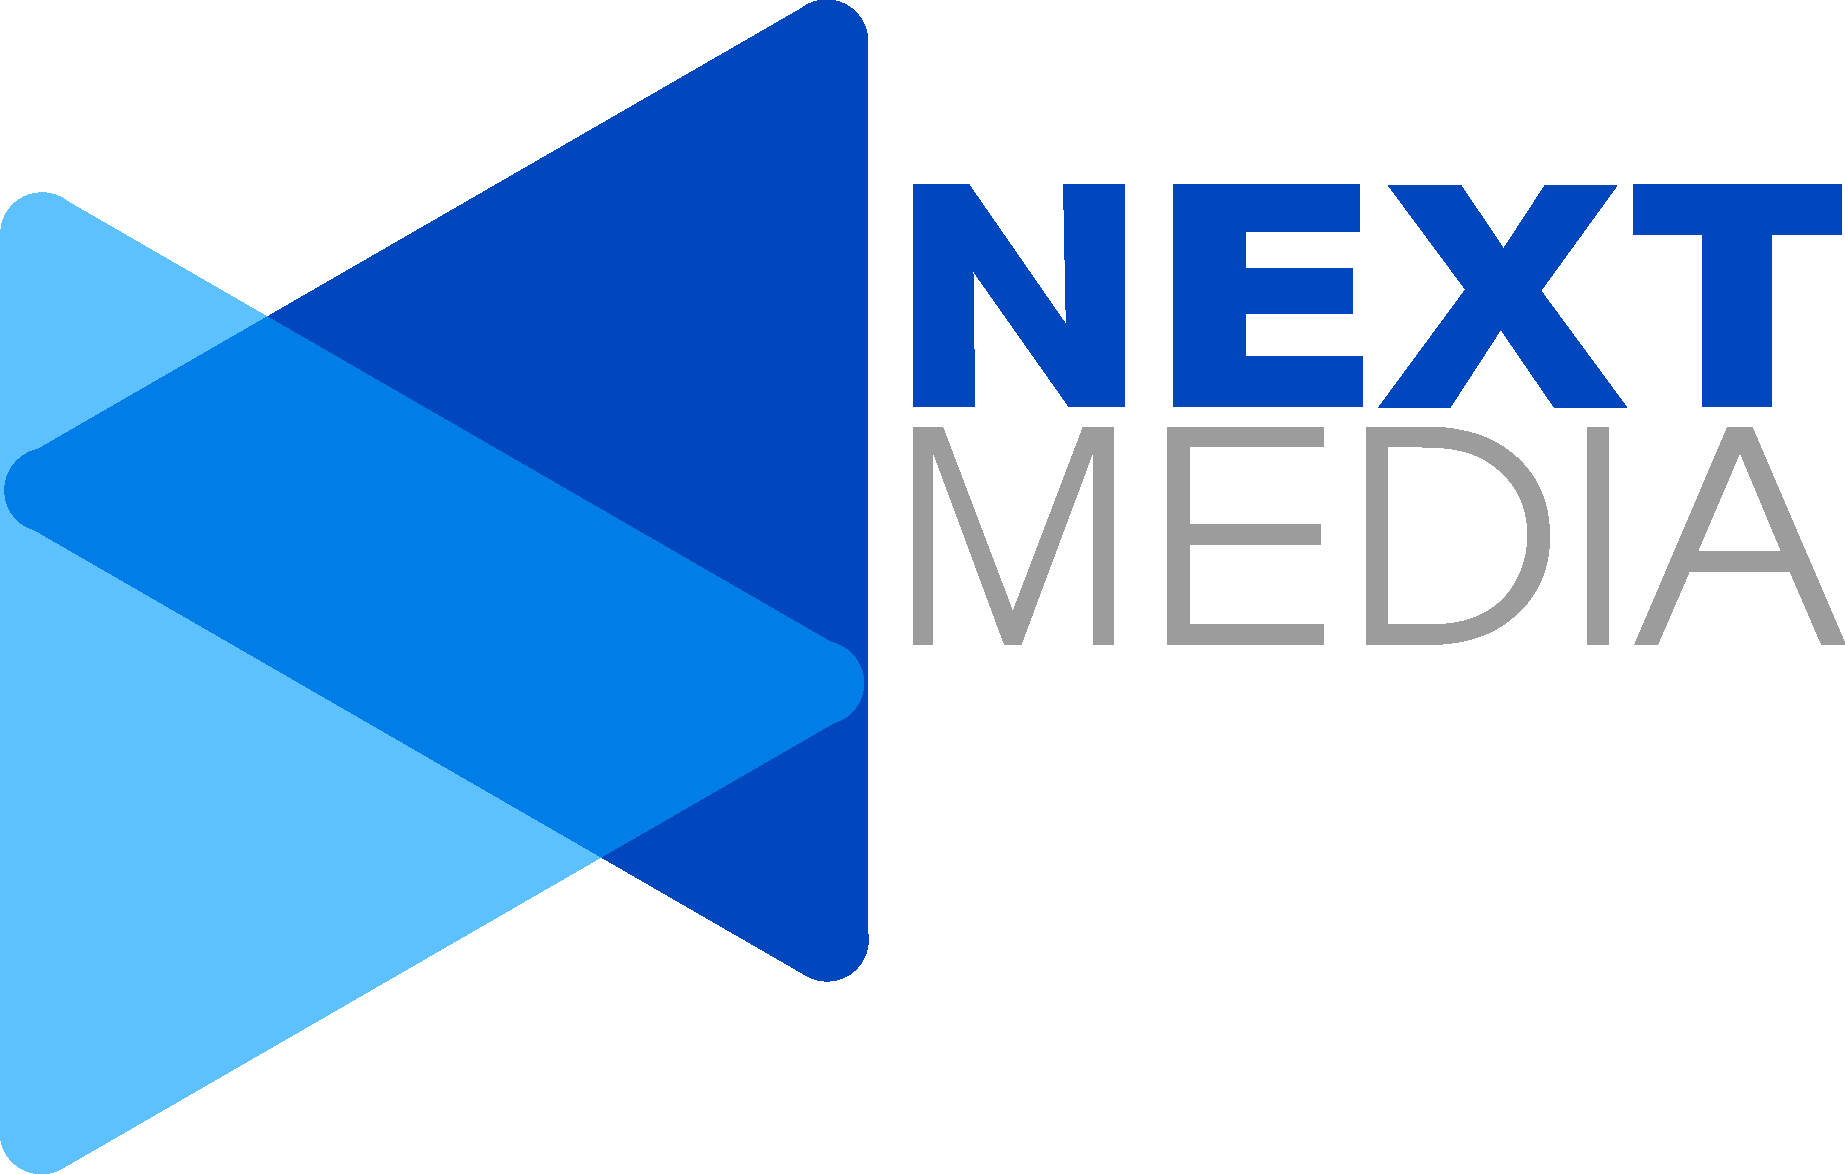 Next Media